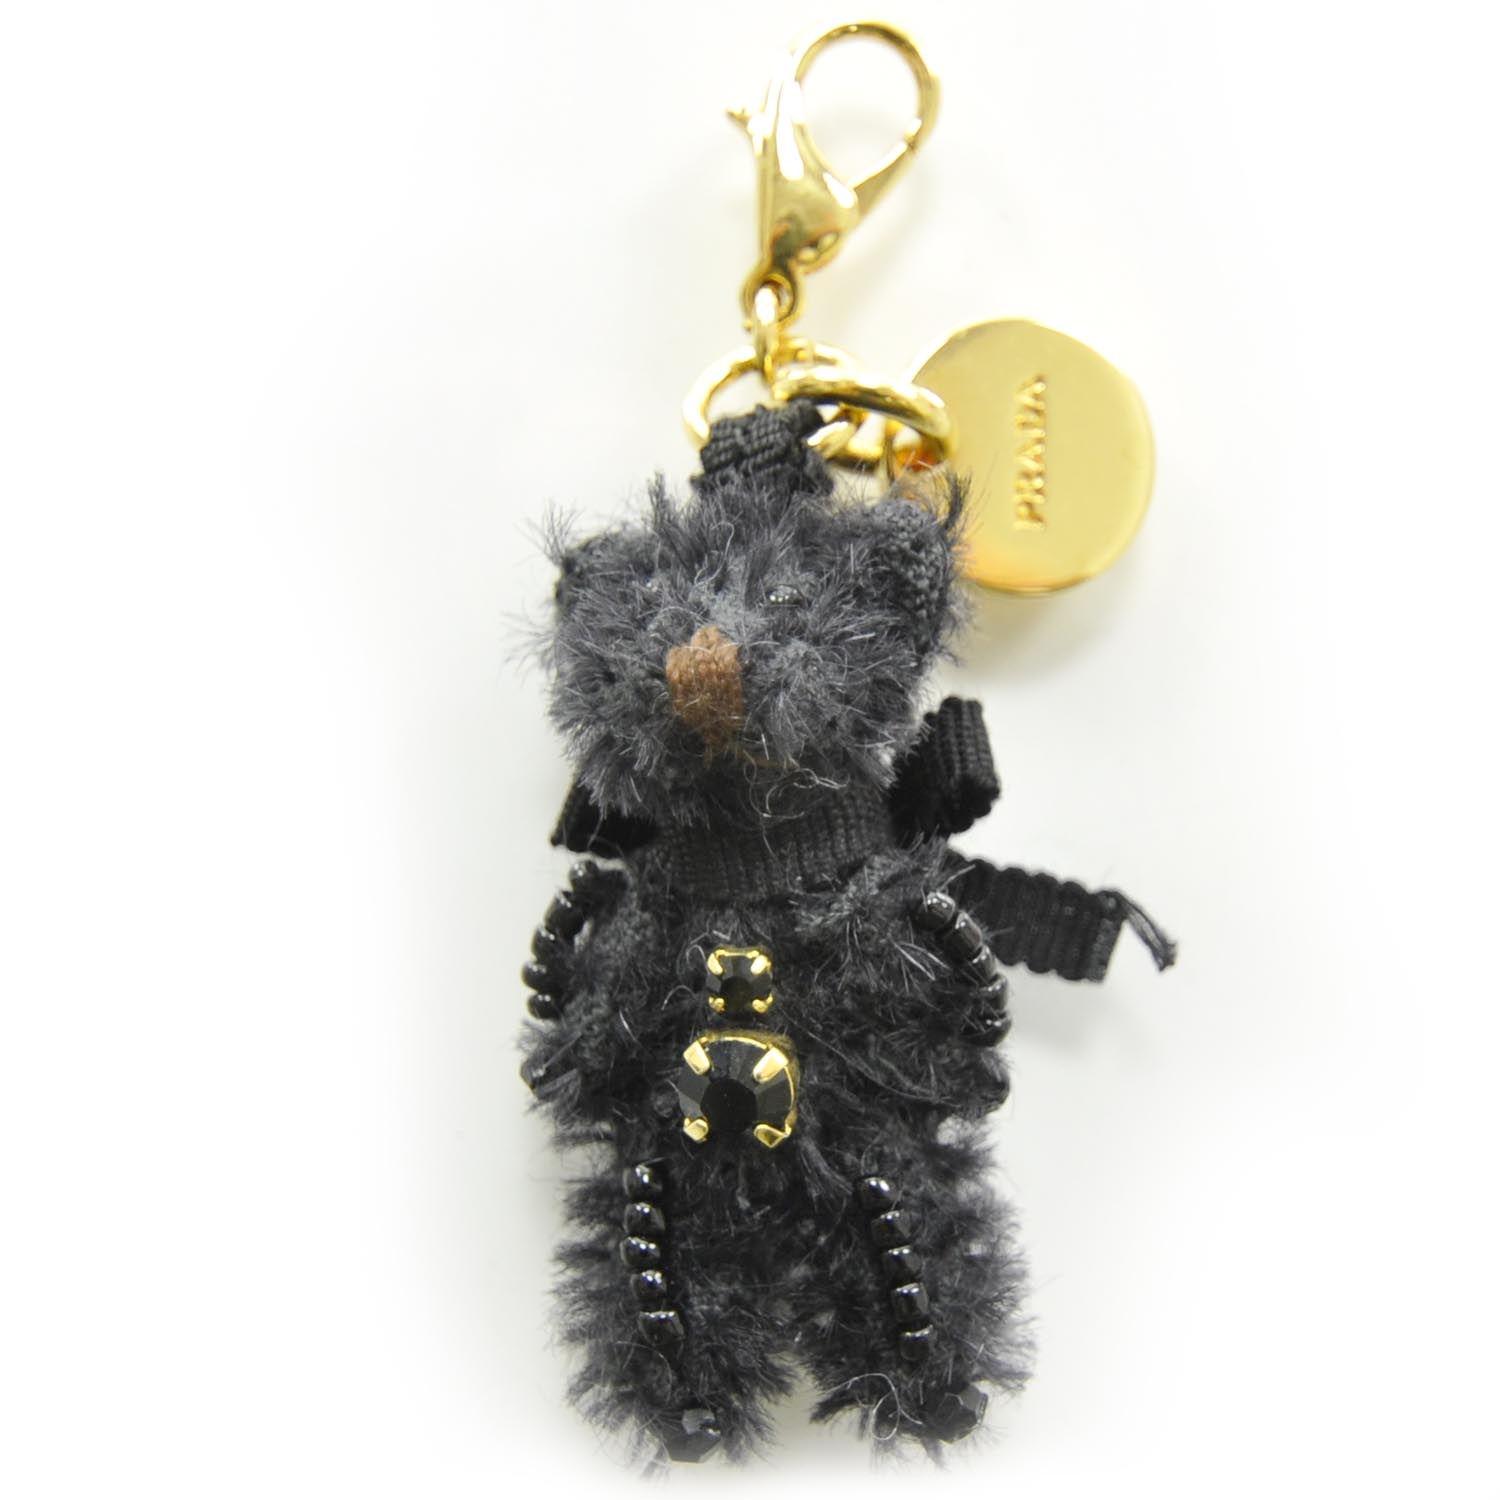 PRADA Teddy Bear Keychain Black 22416